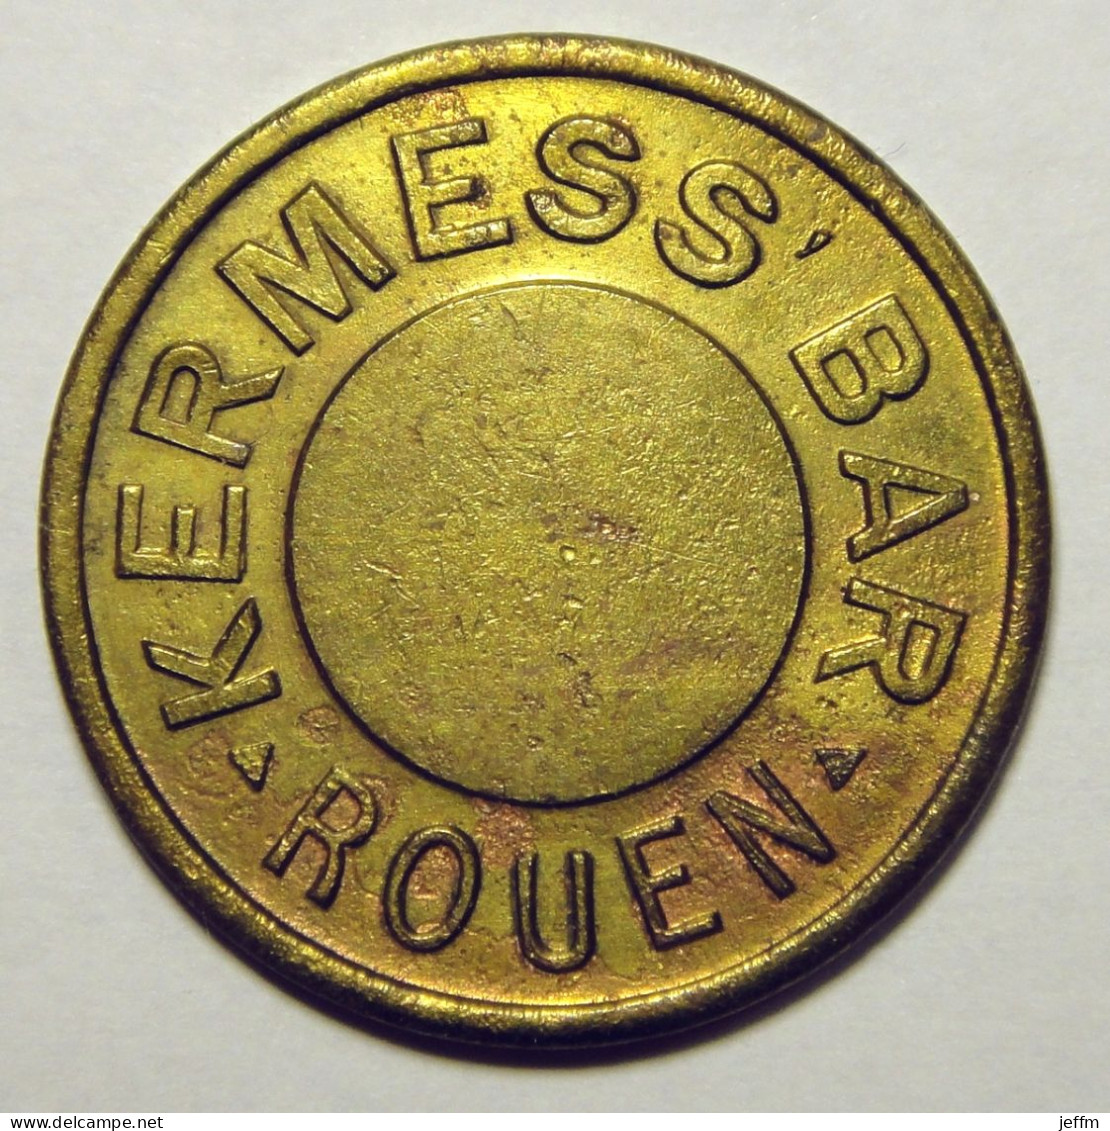 Rouen - Kermess Bar - Pour L'amusement - Monedas / De Necesidad